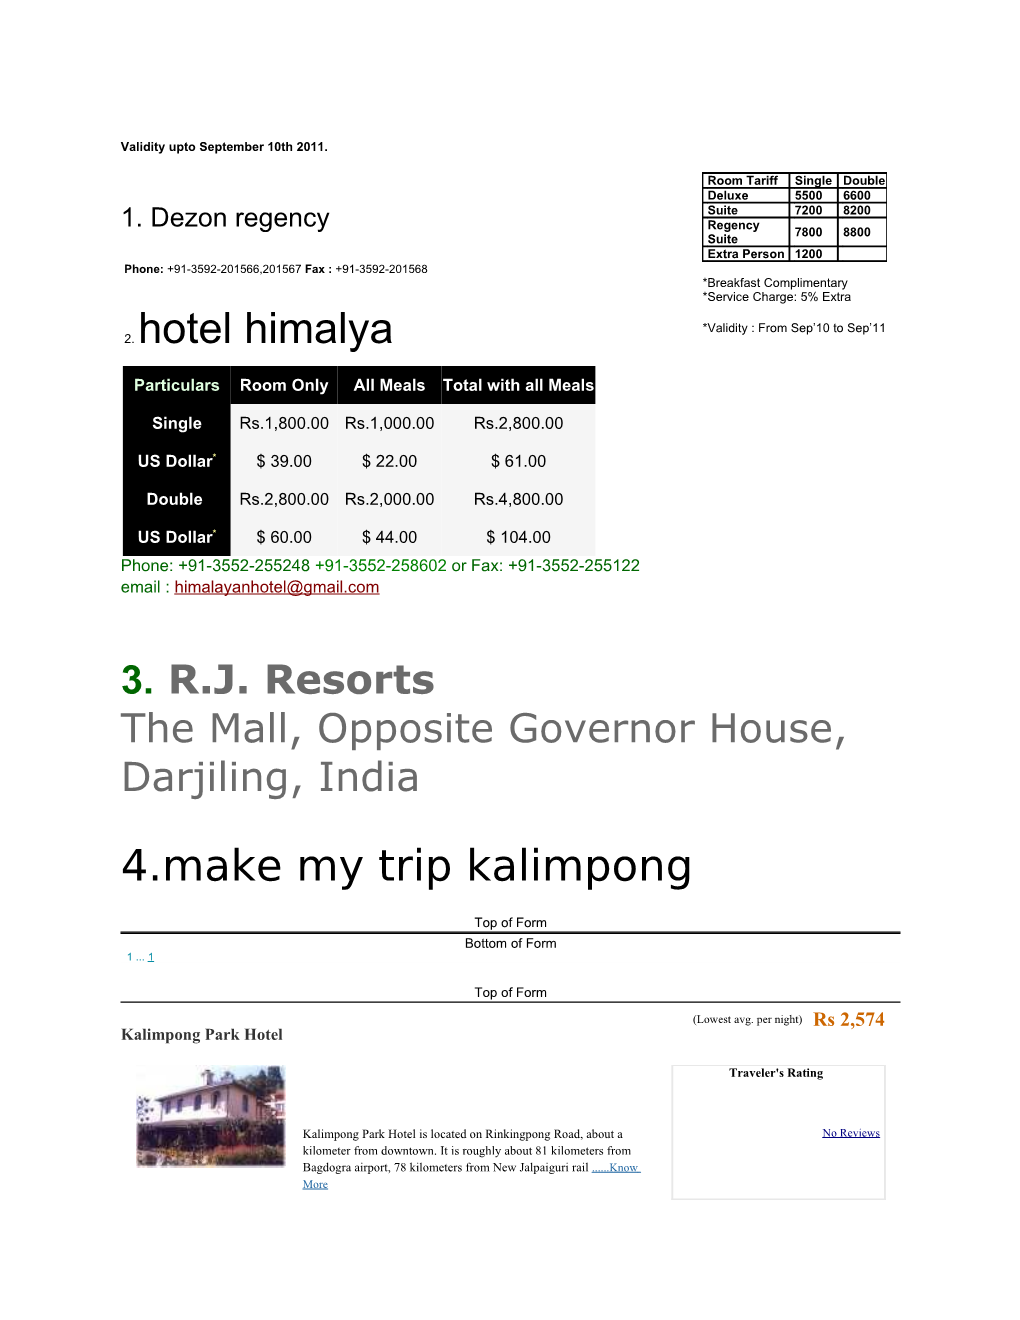 2. Hotel Himalya 4.Make My Trip Kalimpong